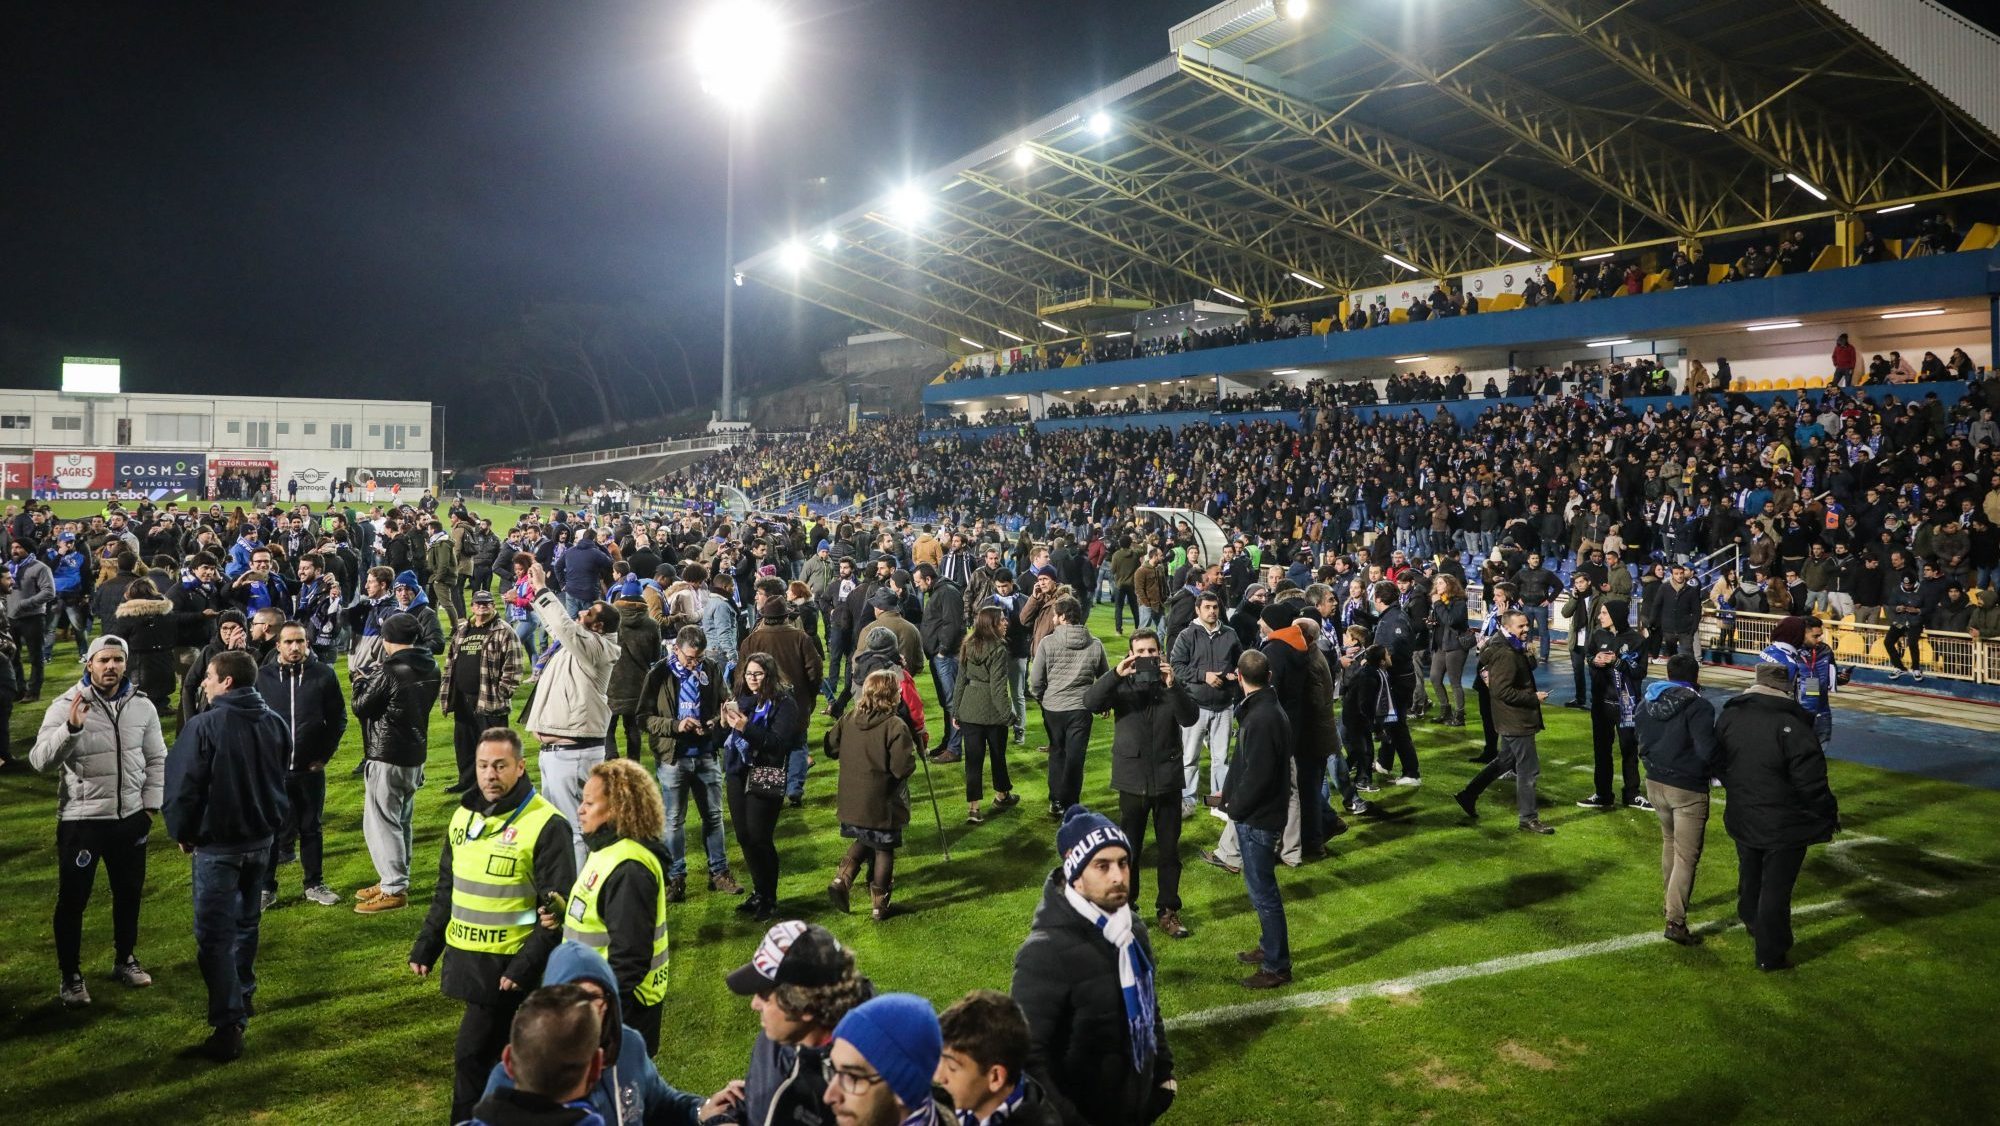 Último encontro na Amoreira para o Campeonato entre Estoril e FC Porto teve de ser interrompido por questões de segurança devido ao risco detetado numa bancada